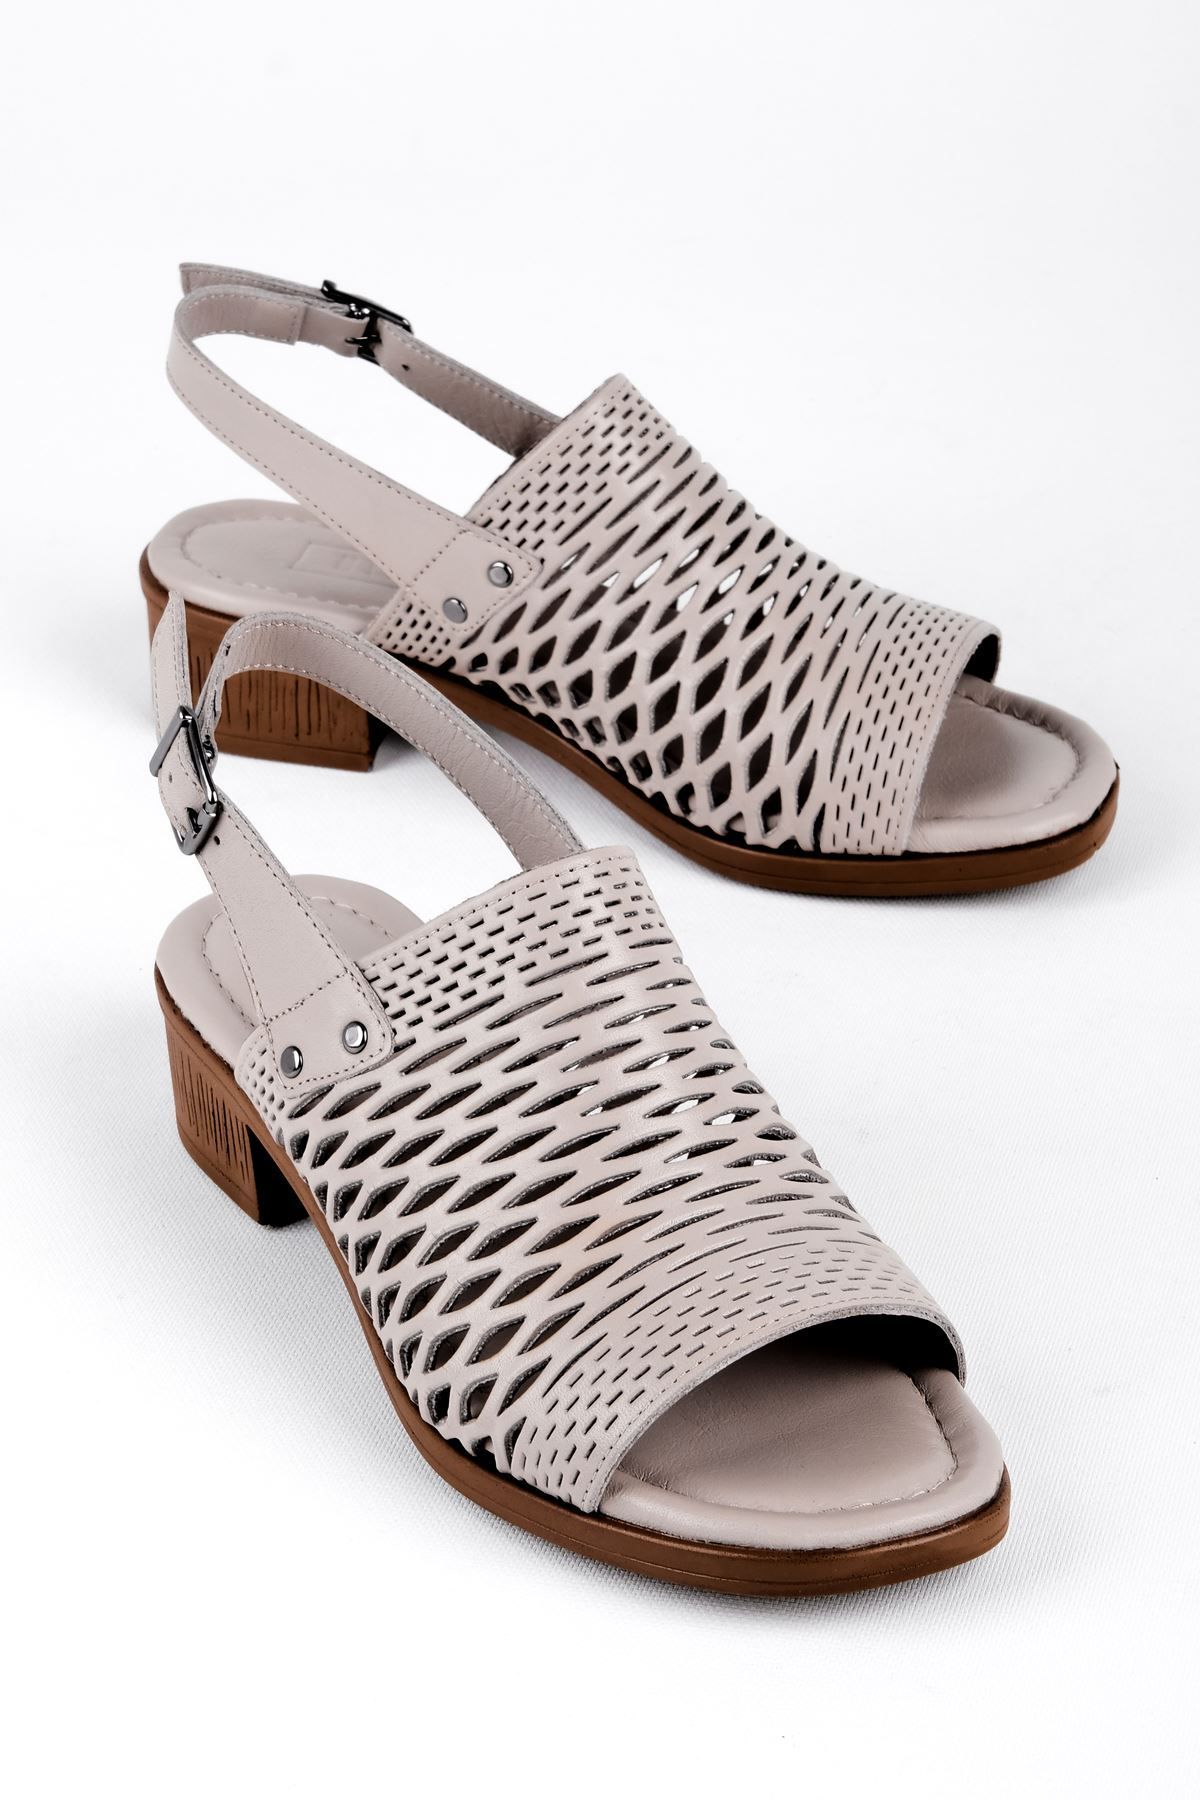 LAL SHOES & BAGS Ressie Kadın Hakiki Deri Deli Detaylı Arkası Açık Topuklu Ayakkabı-Gri